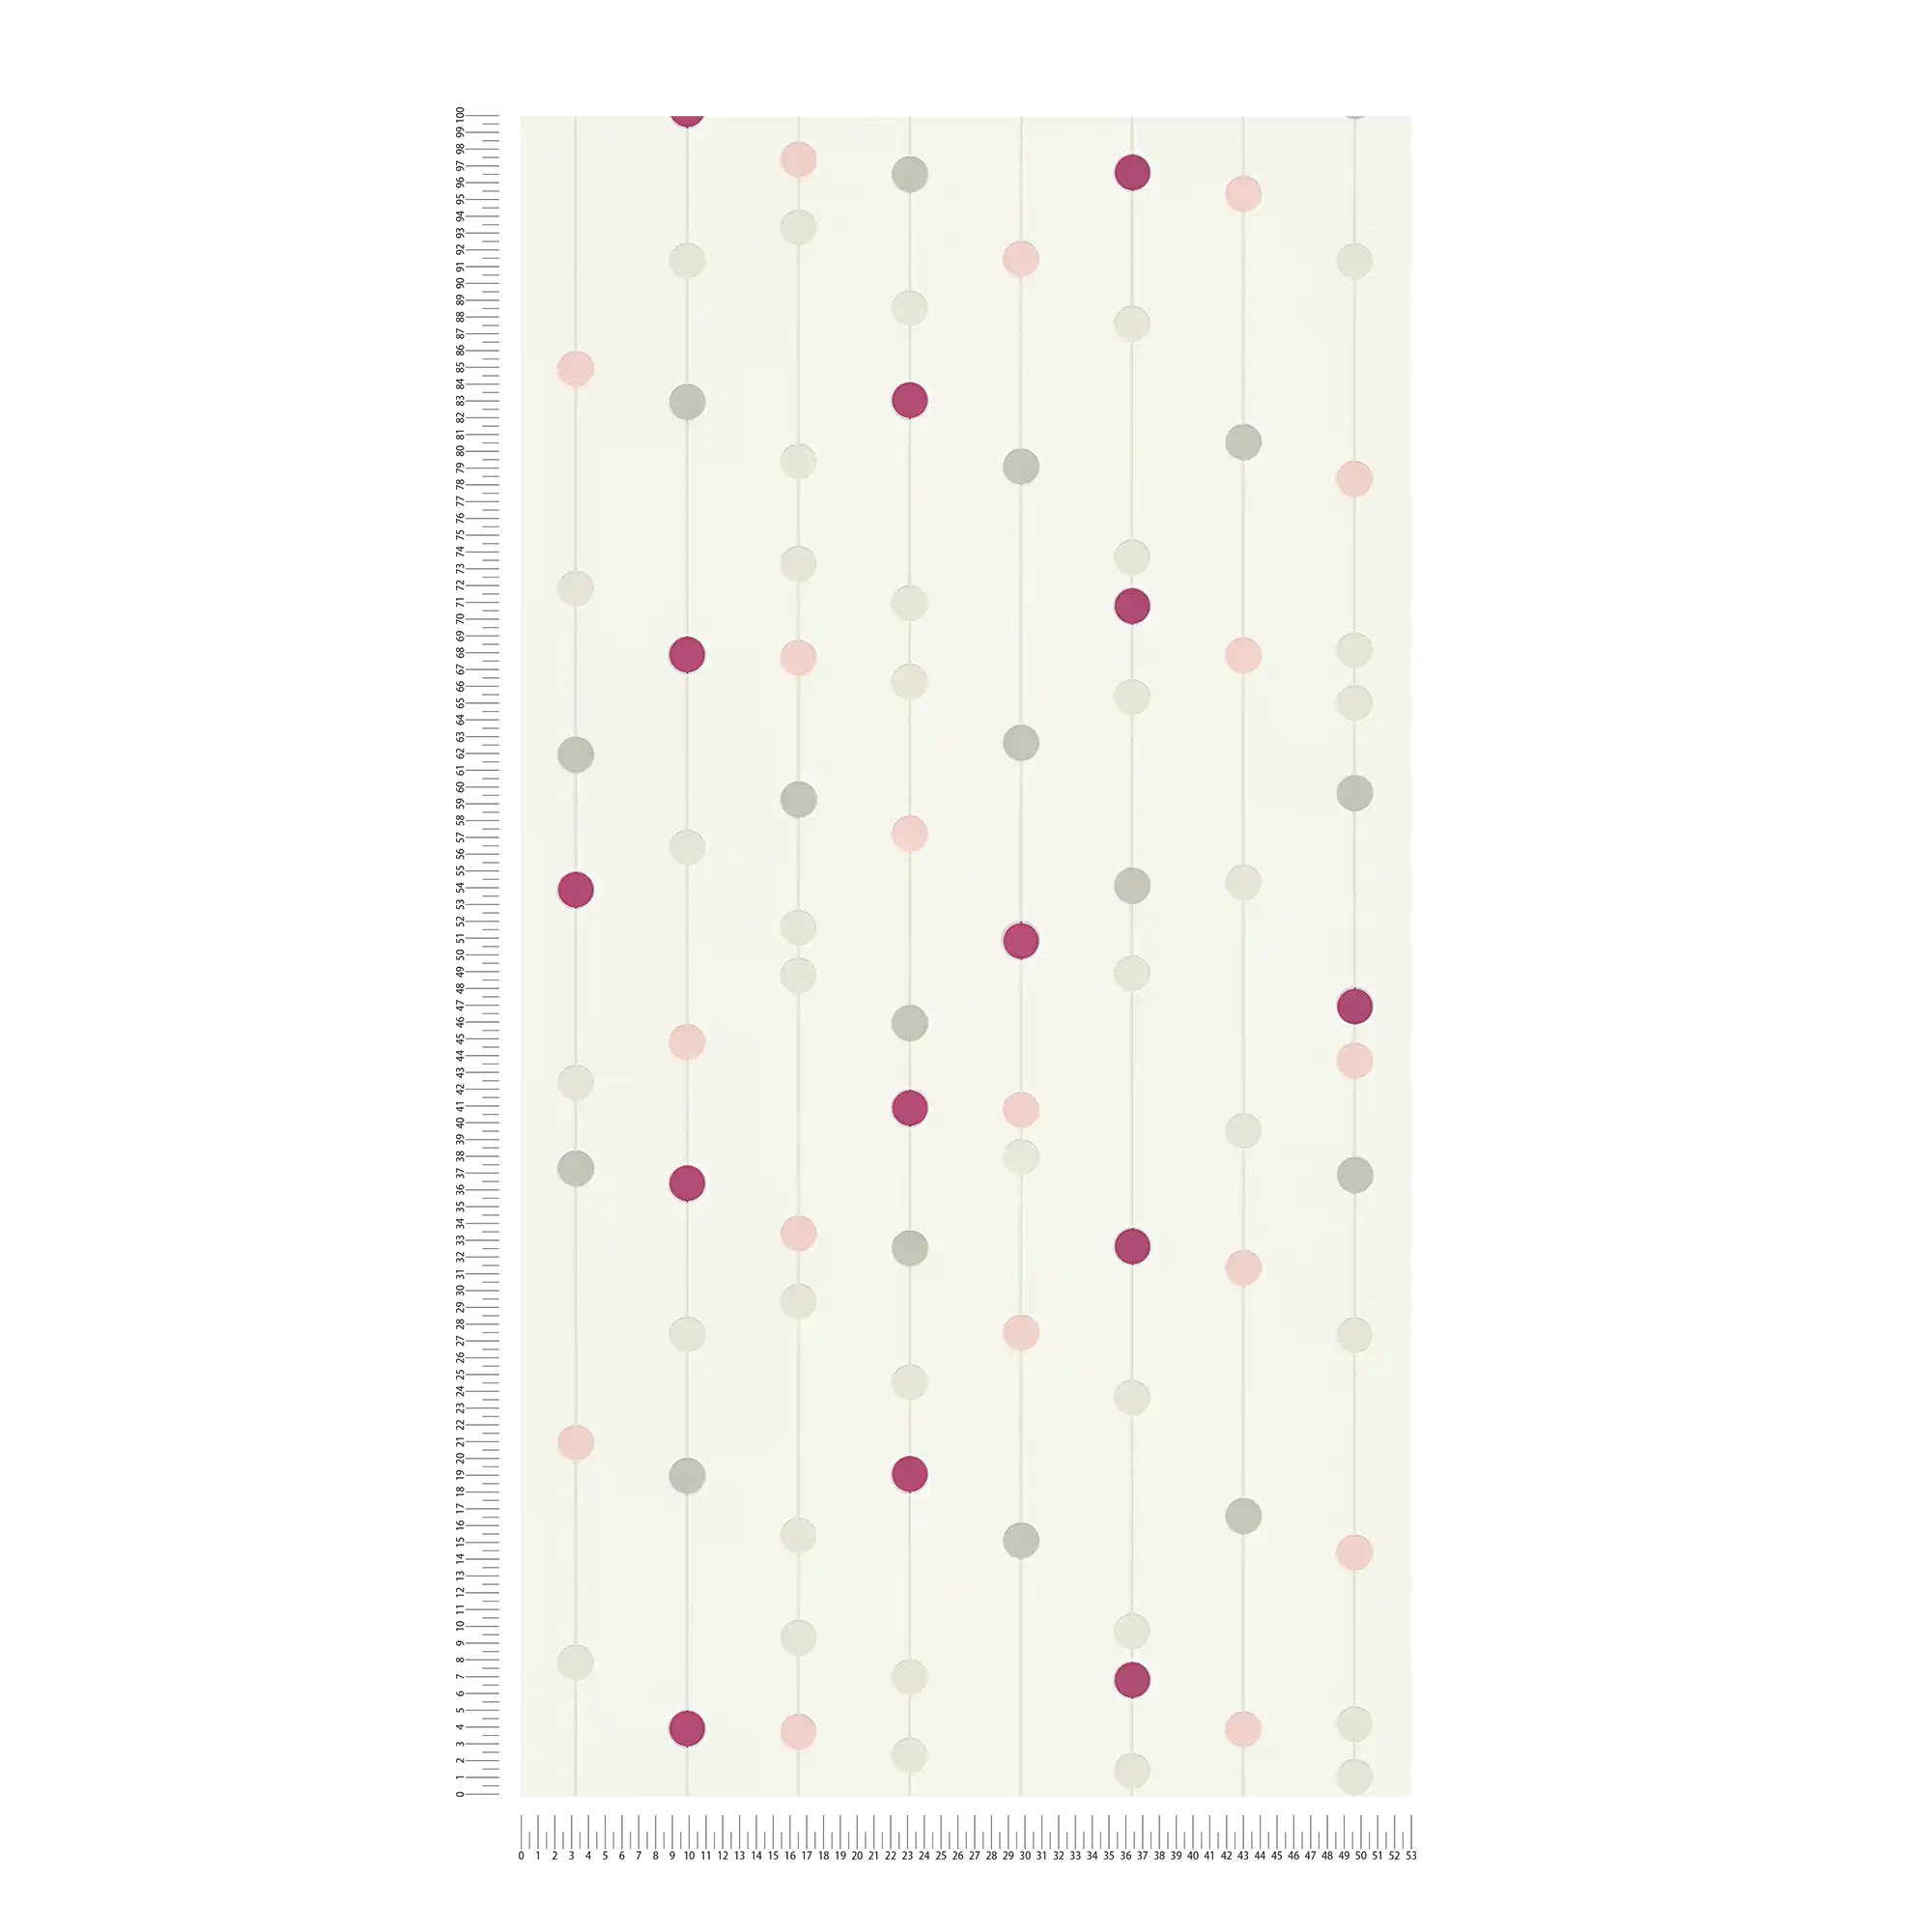             Carta da parati in tessuto non tessuto a pois viola con effetto metallizzato - rosso, beige, bianco
        